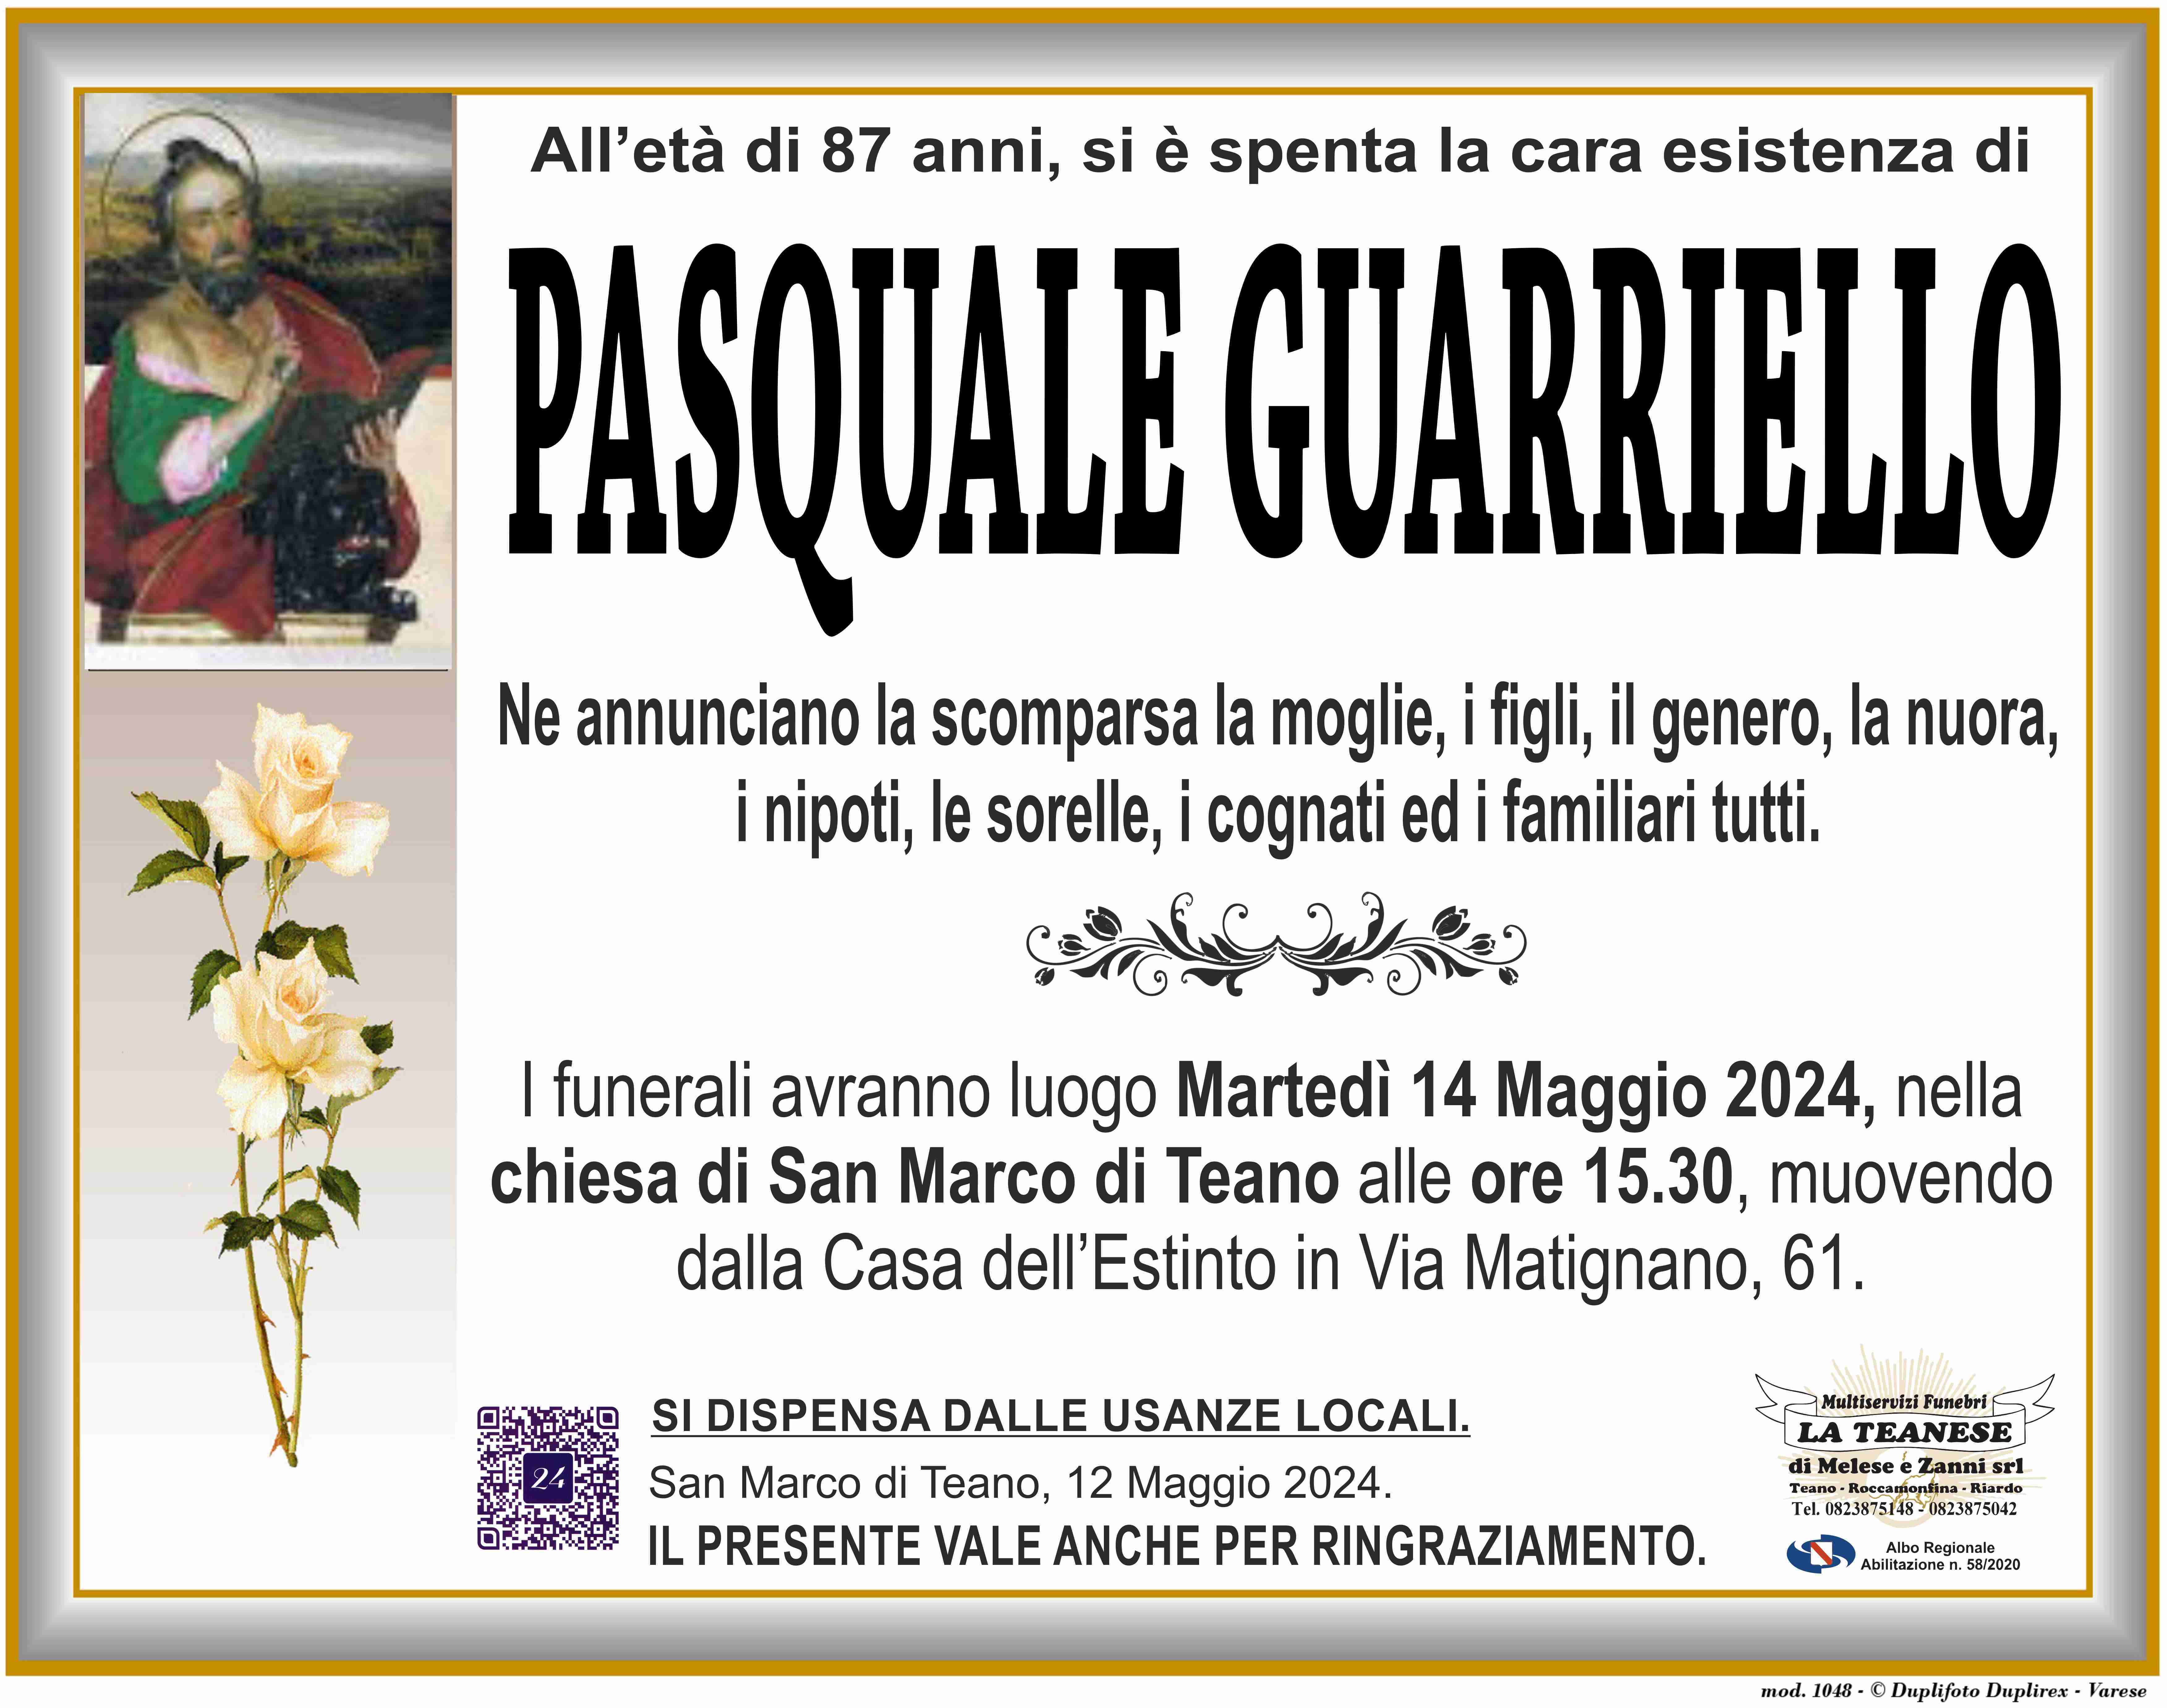 Pasquale Guarriello